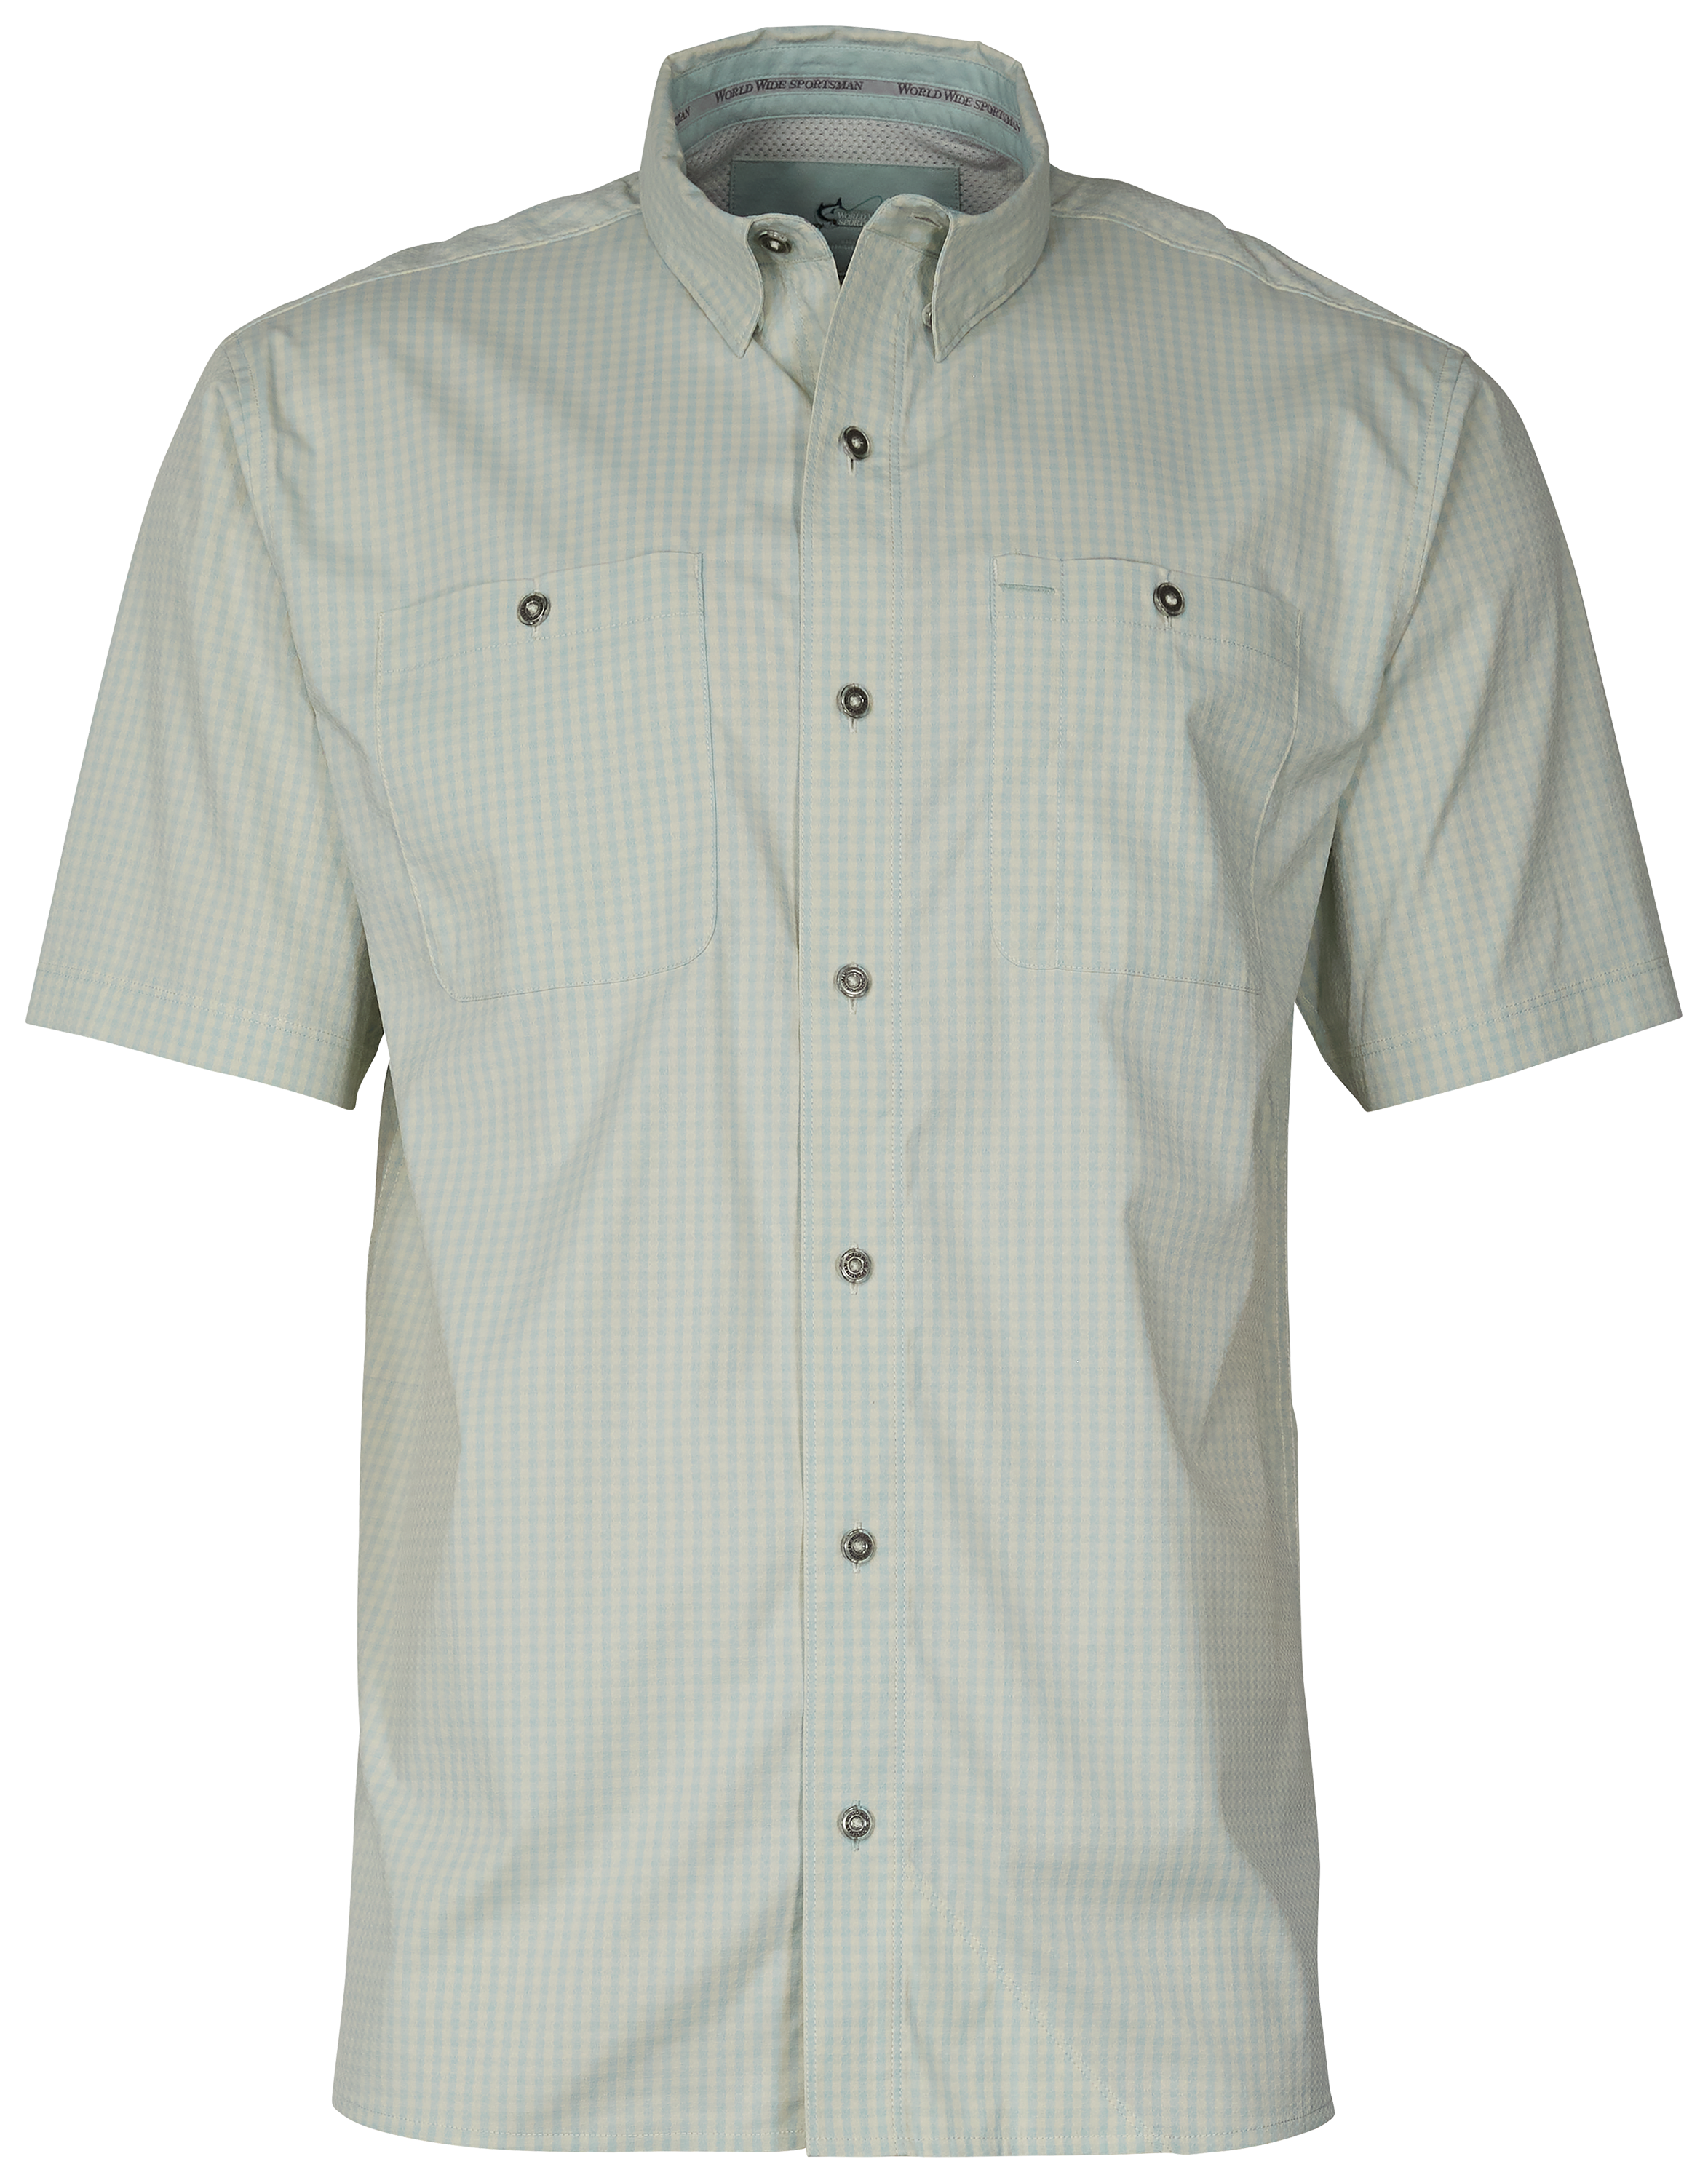 World Wide Sportsman Ultimate Angler Plaid Short-Sleeve Shirt for Men - Harbor Gray Gingham - S